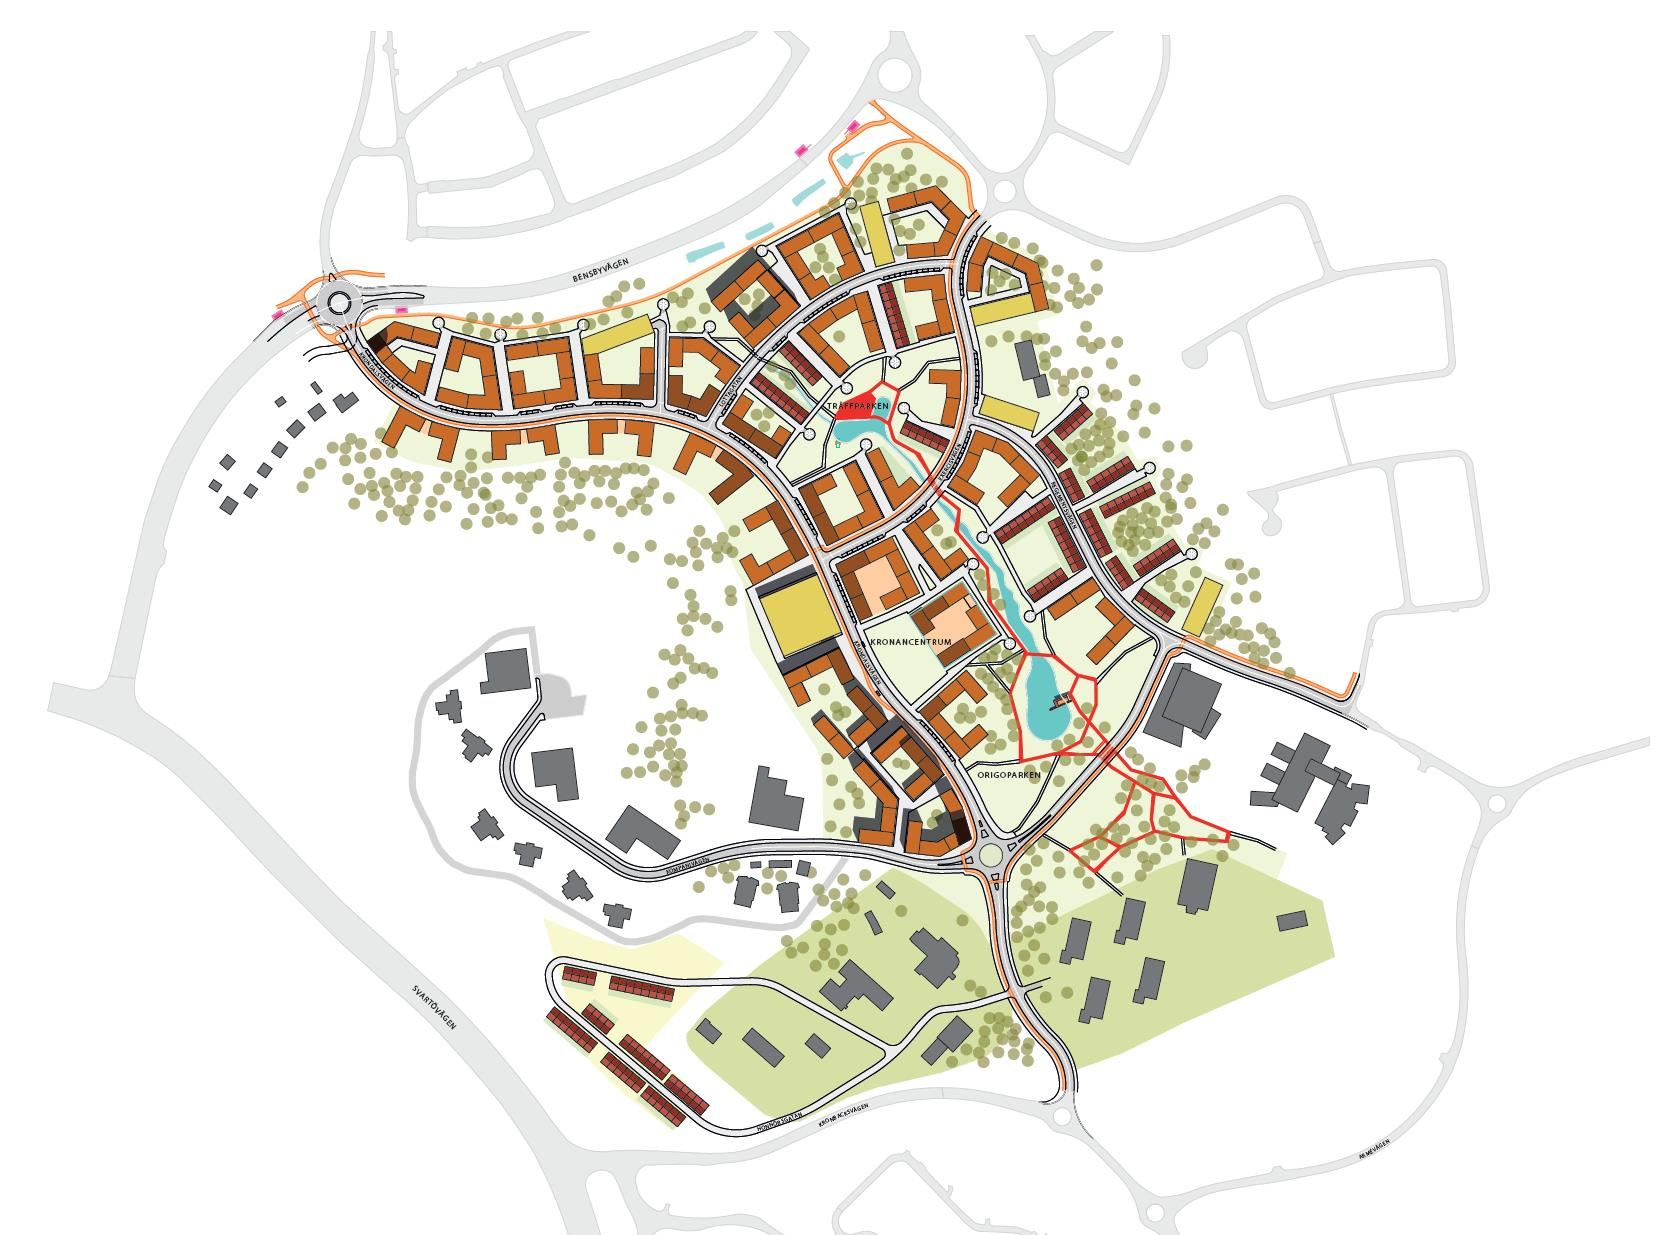 2. Förutsättningar I denna utredning studeras bullersituationen för den nya planerade bebyggelsen i Kronandalen utifrån den strukturplan som erhållits från Luleå kommun.